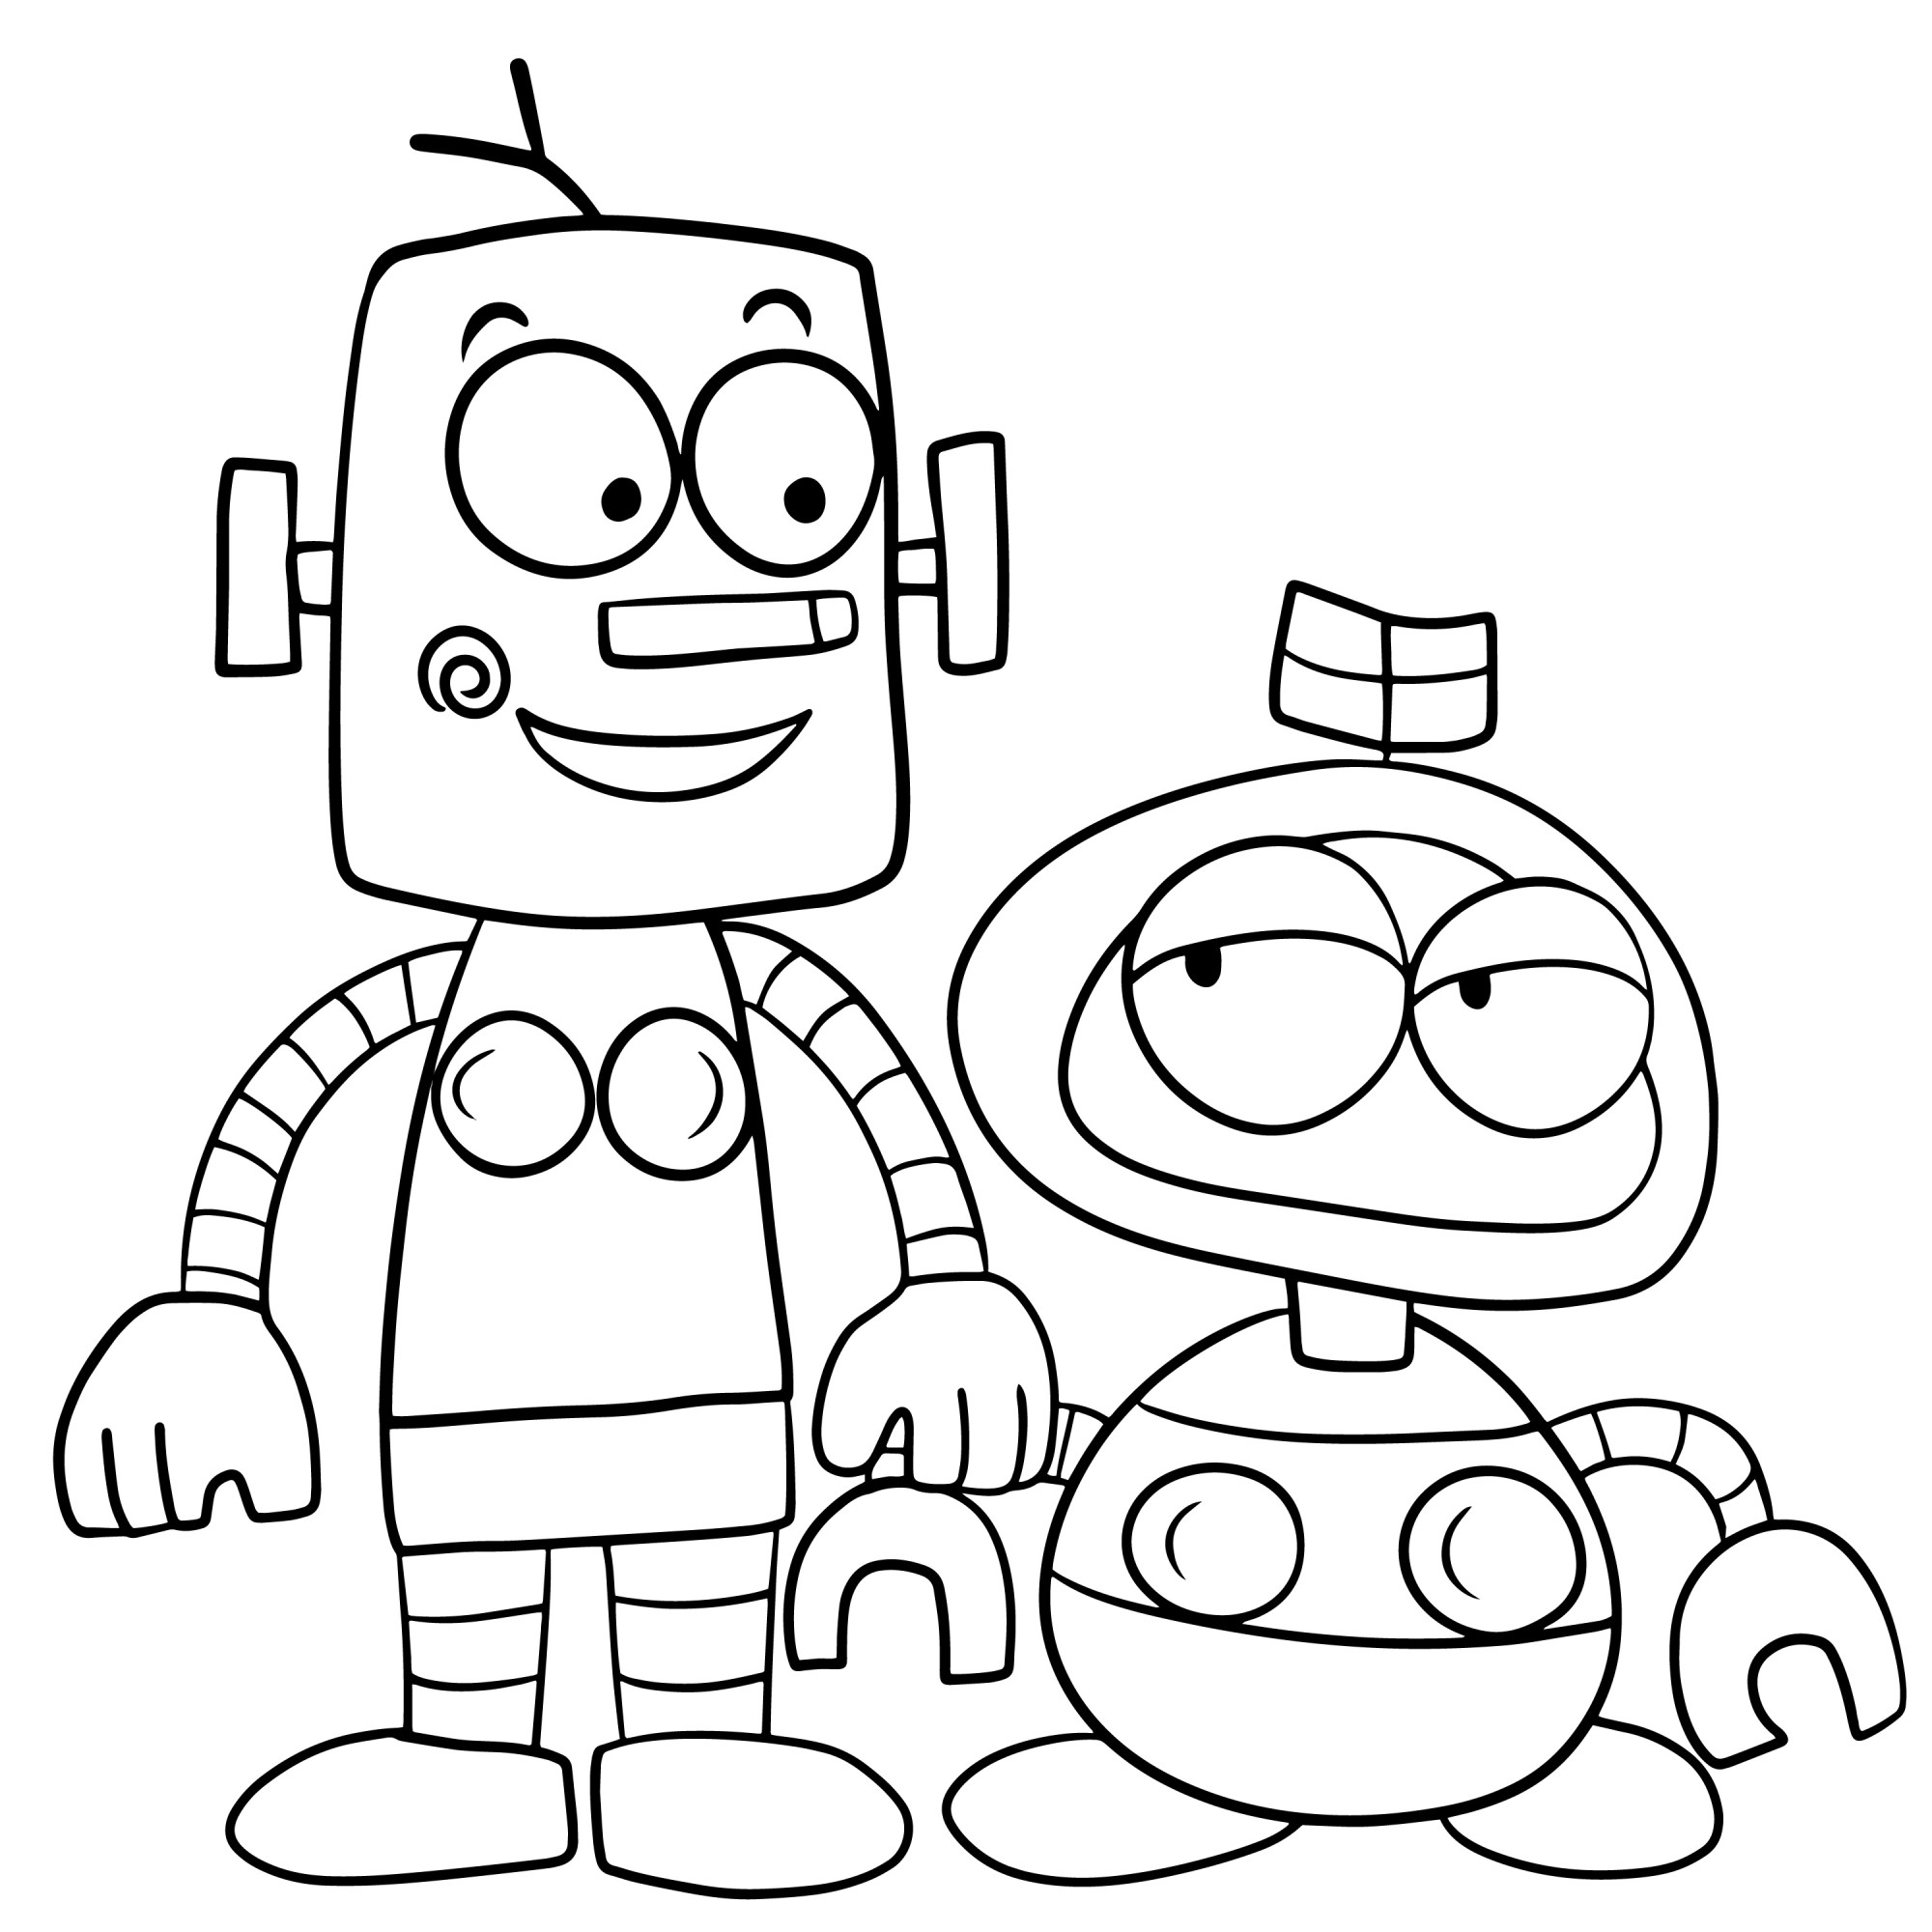 Раскраска для детей: милые роботы каракули каваи